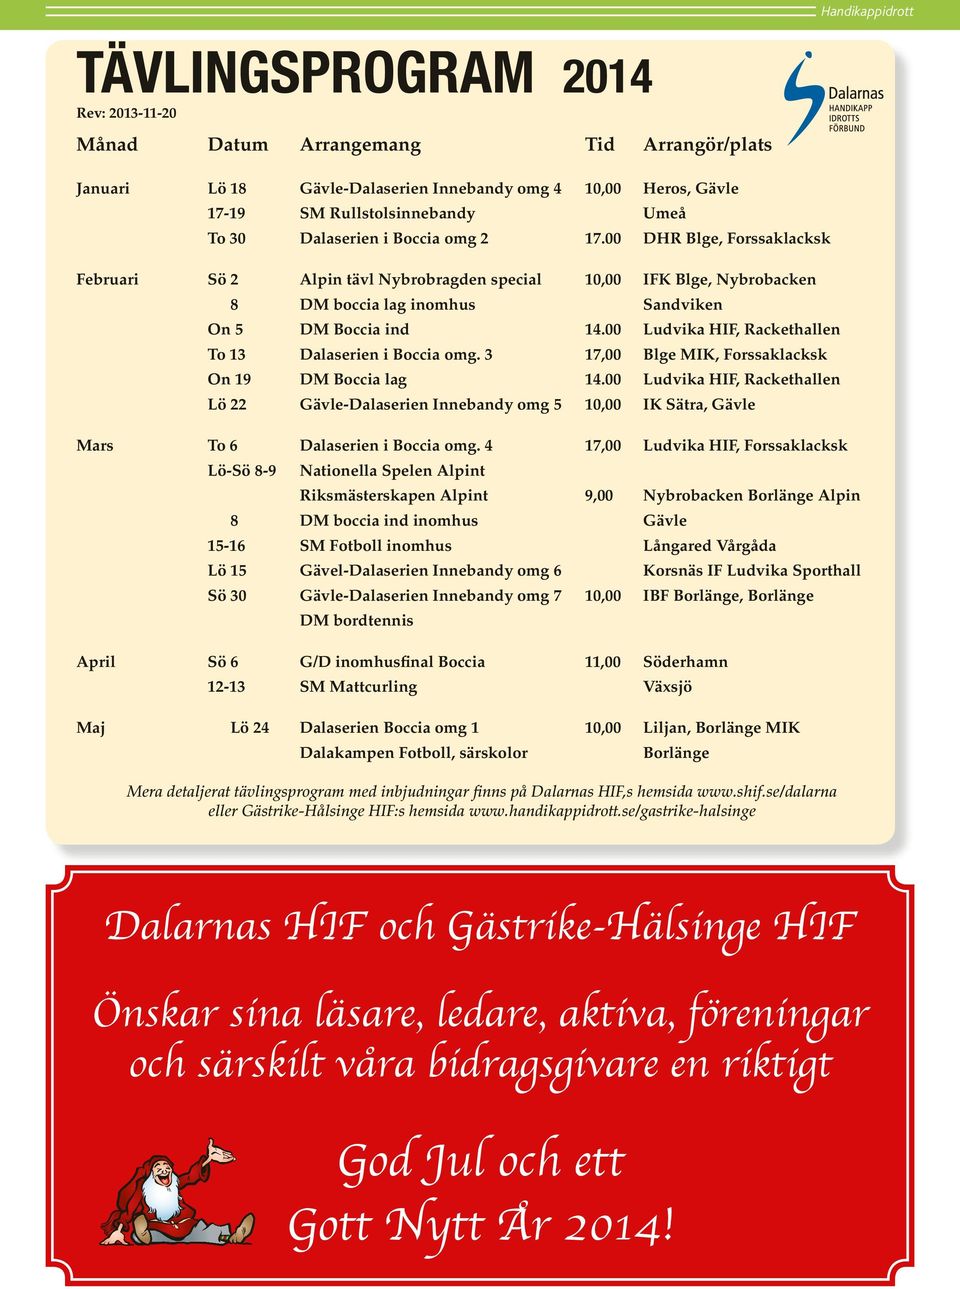 00 Ludvika HIF, Rackethallen To 13 Dalaserien i Boccia omg. 3 17,00 Blge MIK, Forssaklacksk On 19 DM Boccia lag 14.